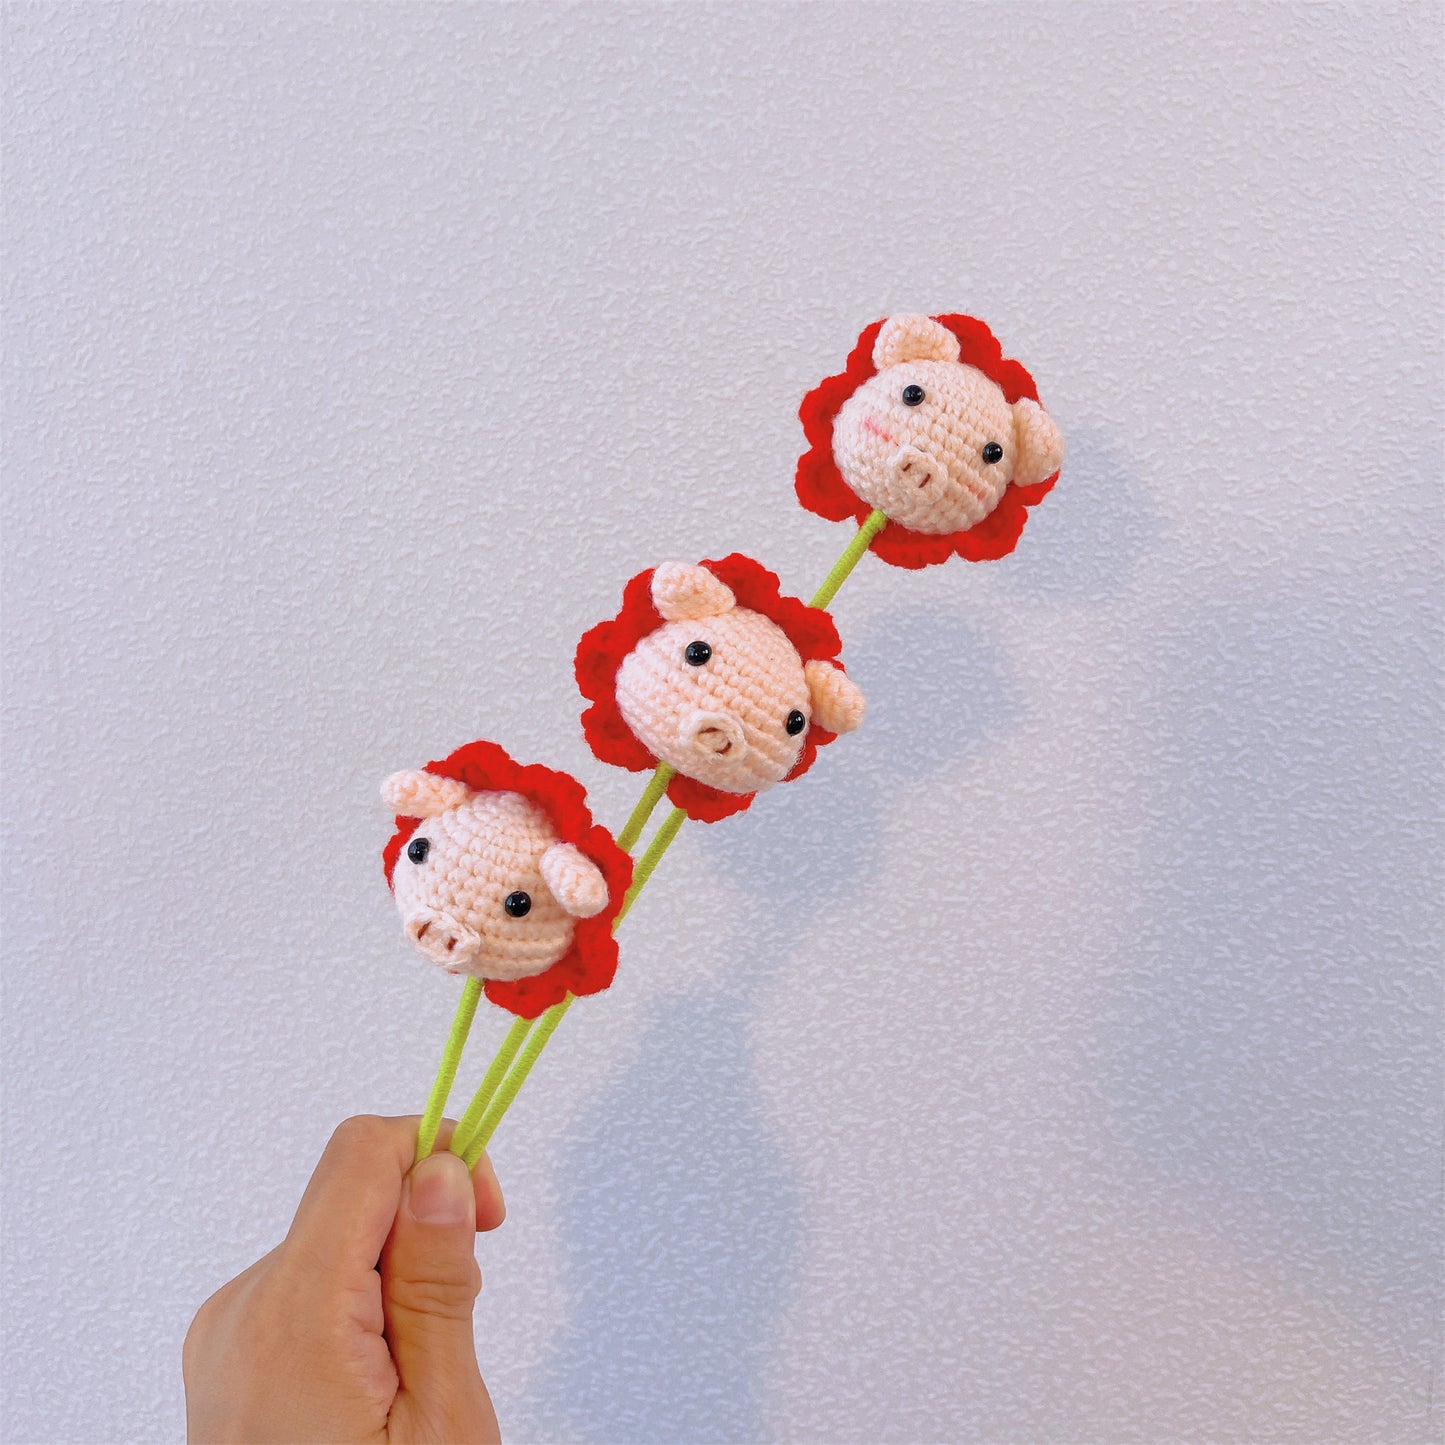 Piggy Bloom : Tête de cochon mignonne au crochet fabriquée à la main avec finition en forme de fleur pour un décor de jardin ludique